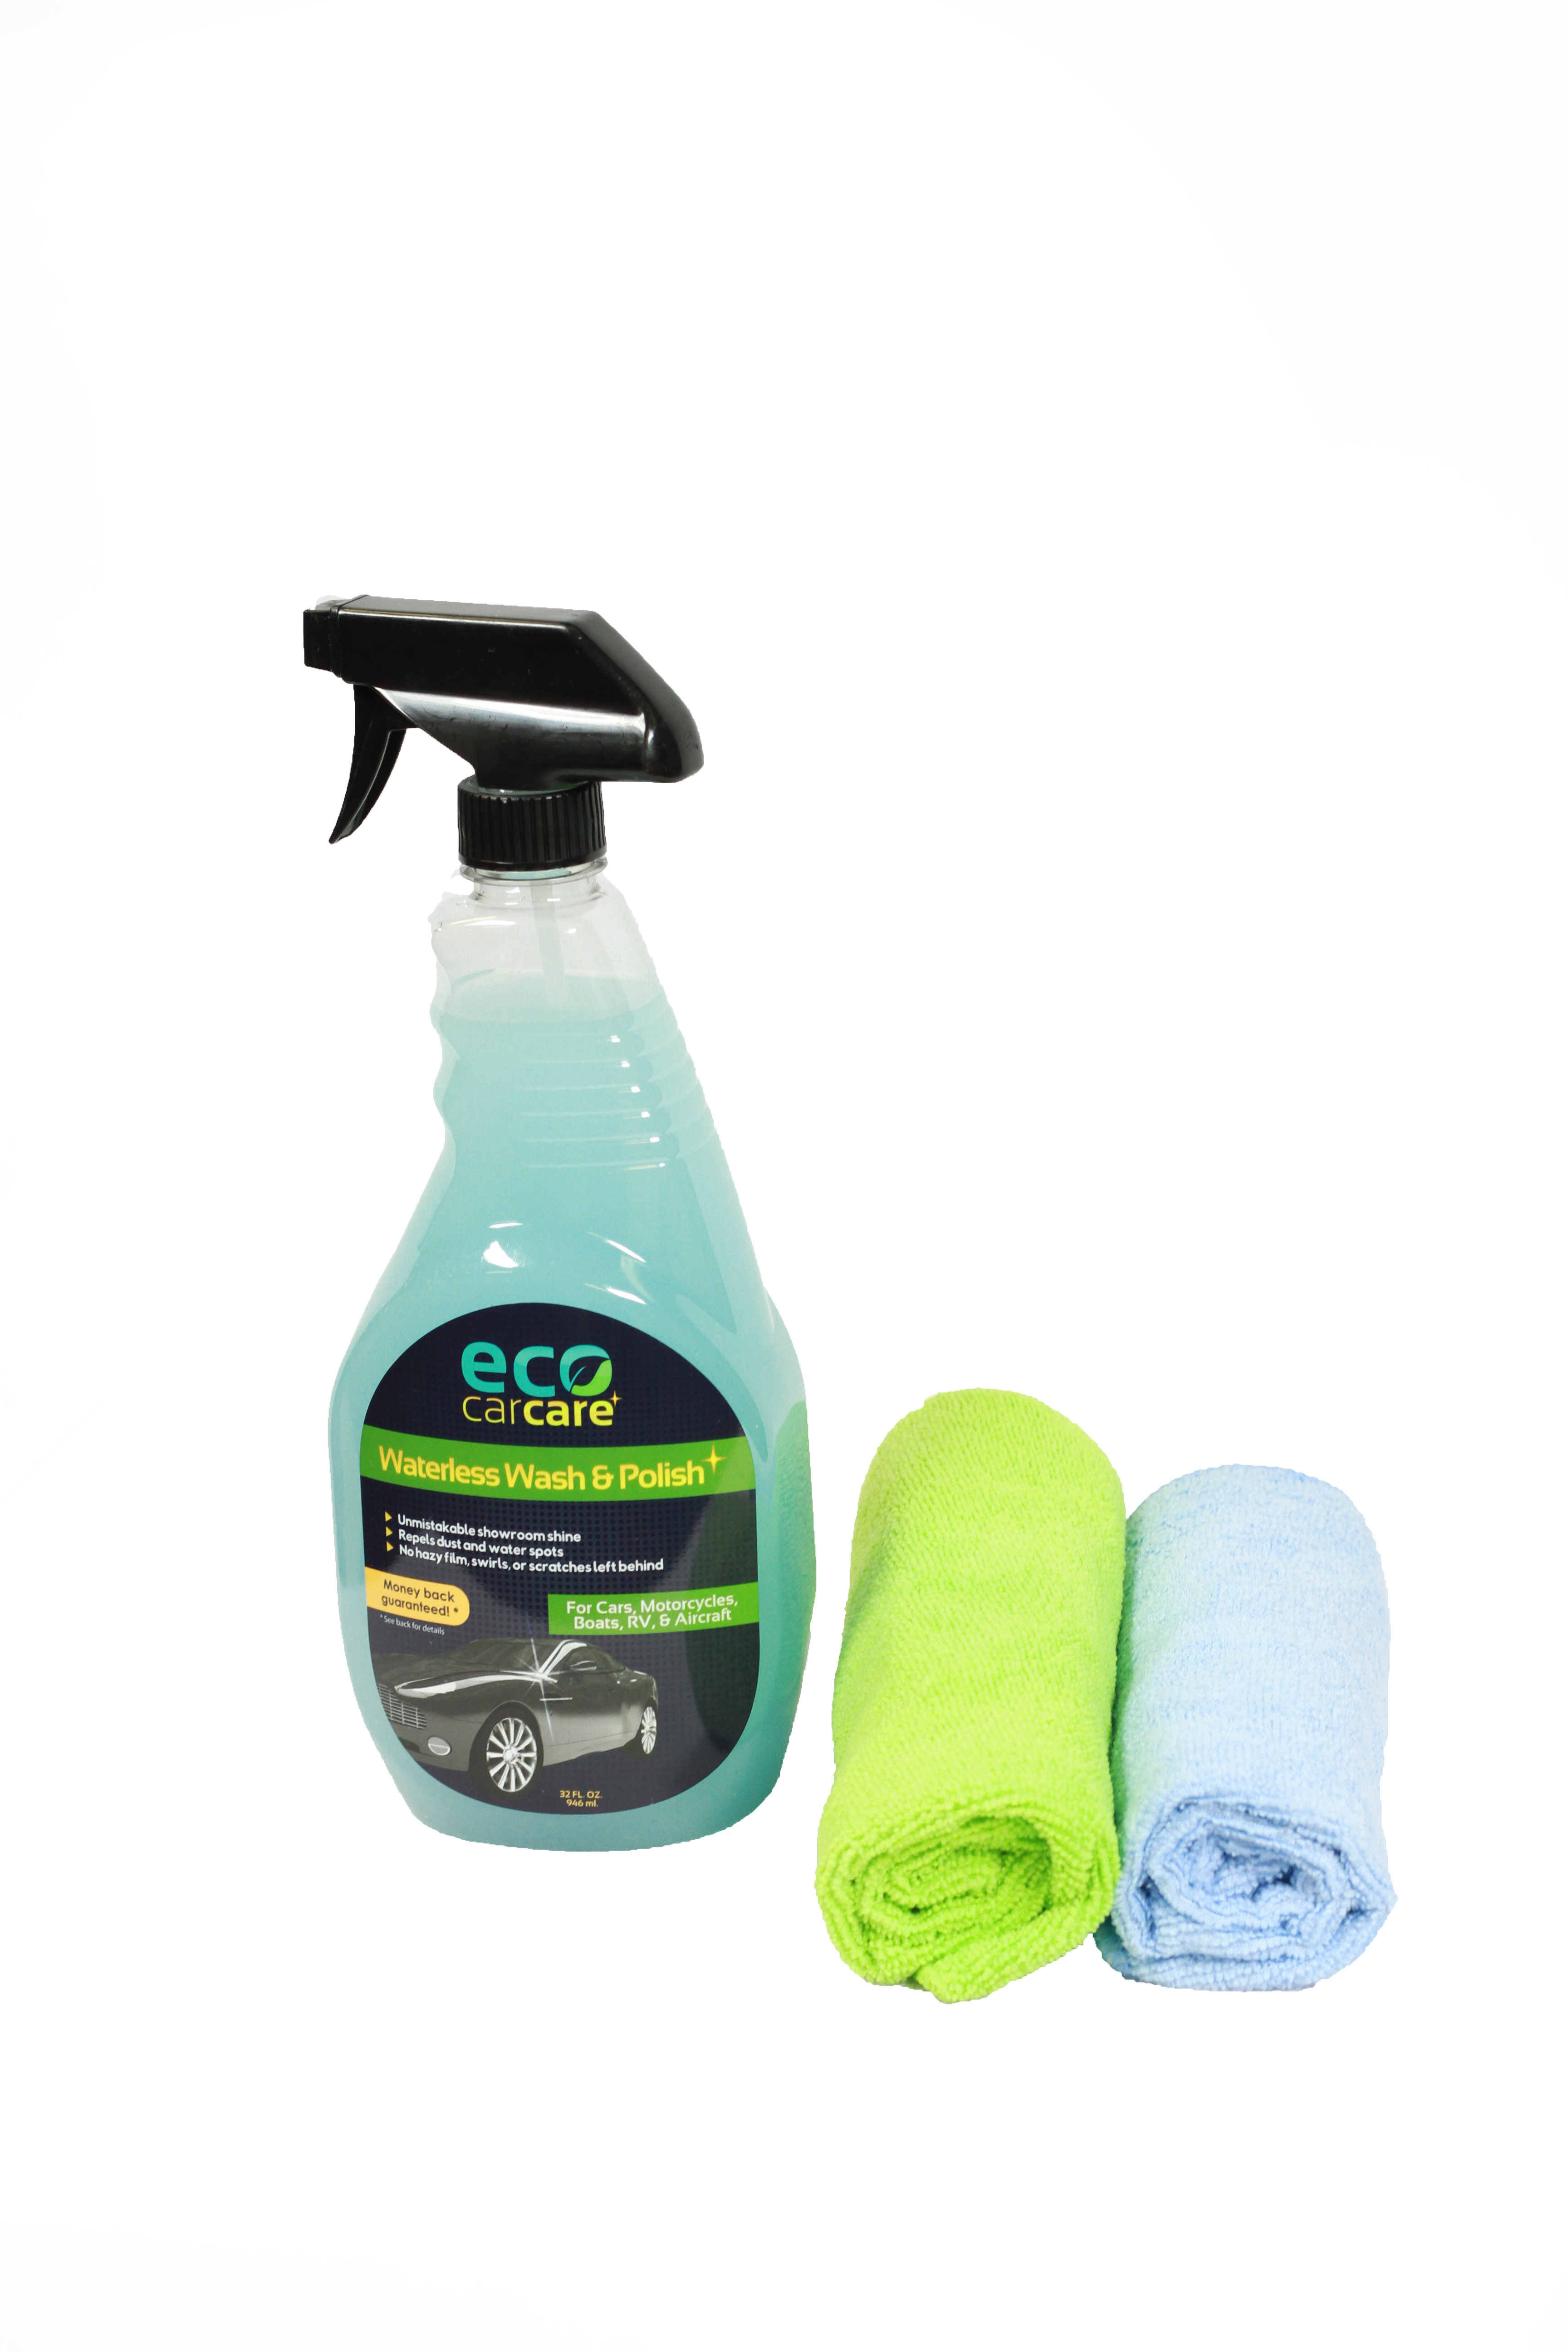 Waterless Car Wash Spray On Wax Formula 32 oz by Eco Car Care